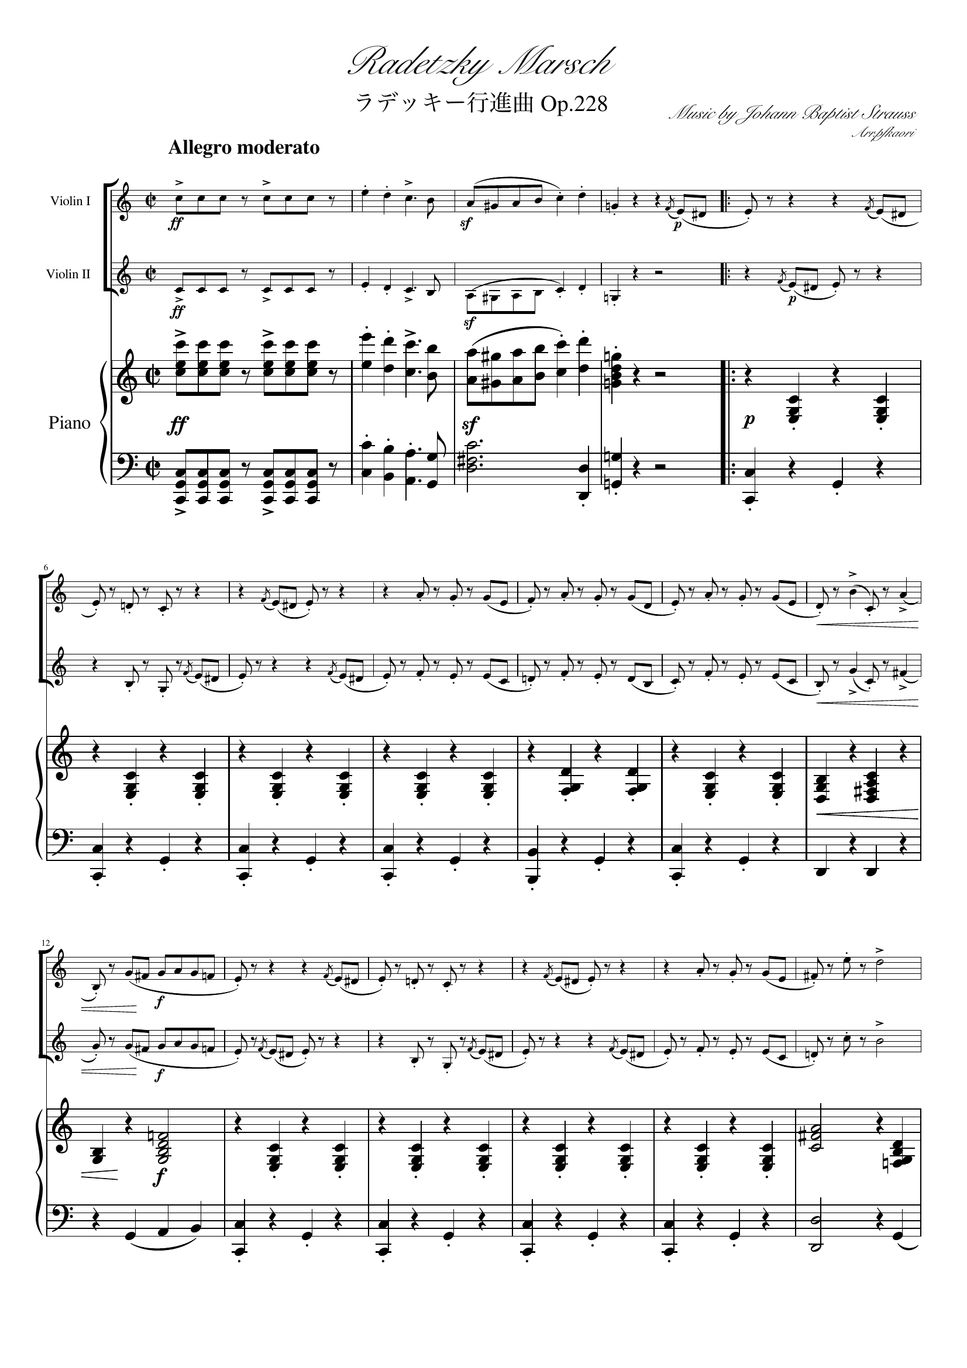 Composer: - Radetzky Marsch (C・Piano trio/Violin duet) by pfkaori